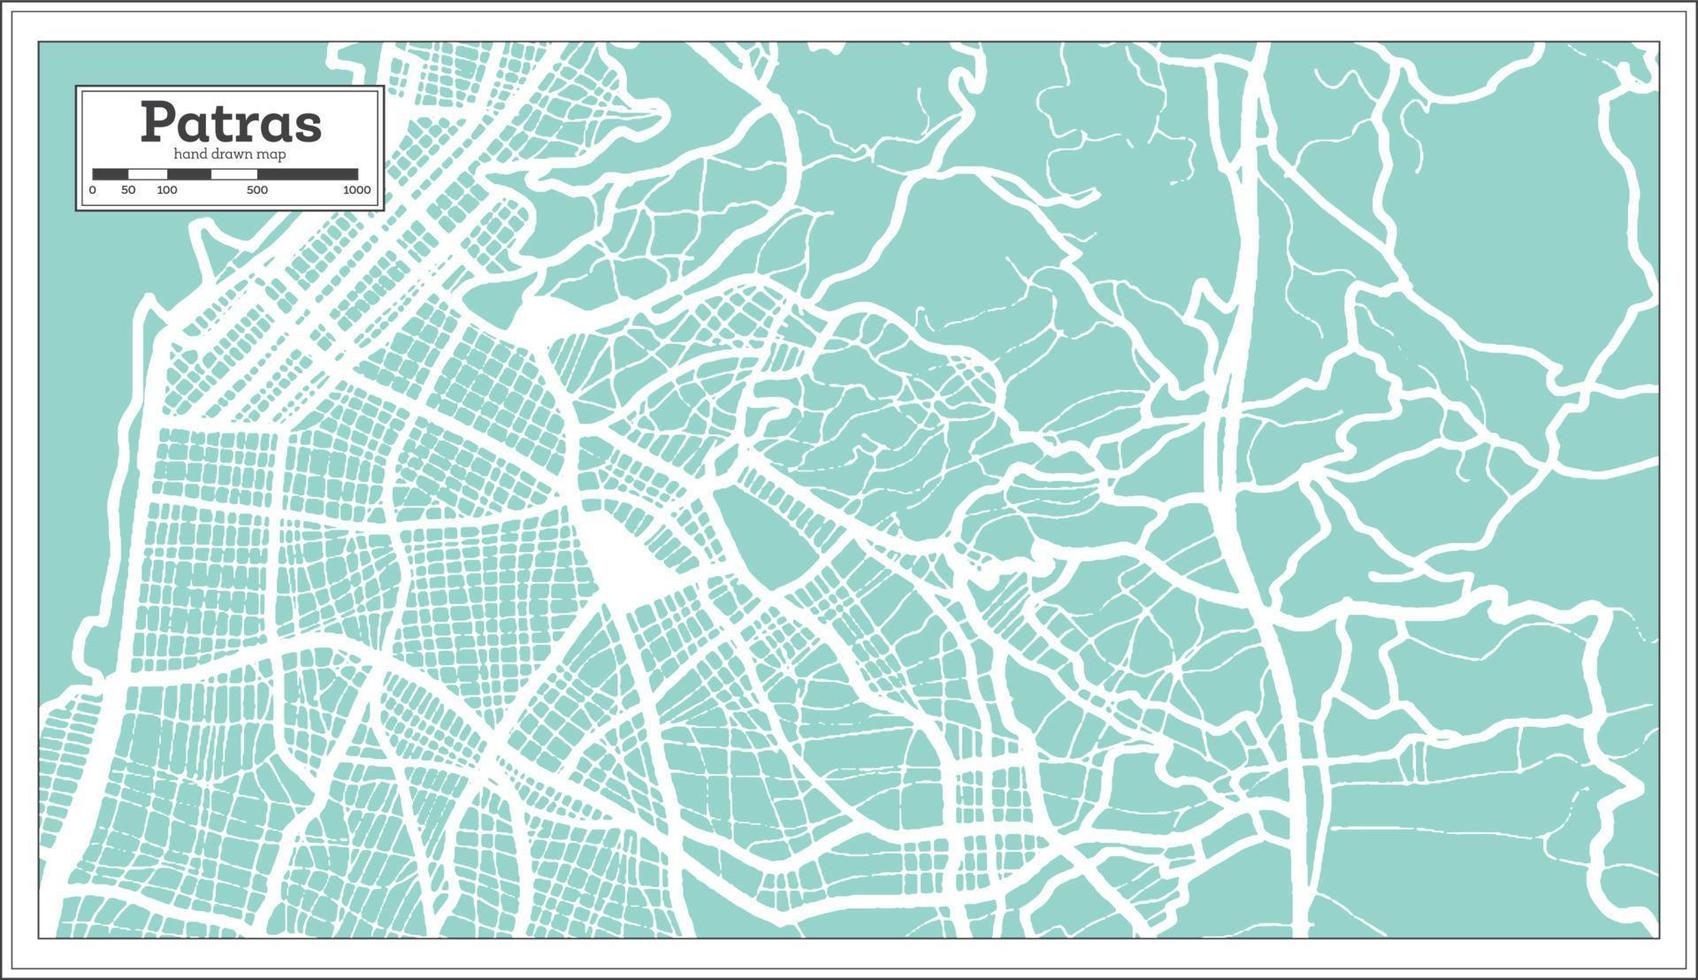 plan de la ville de patras grèce dans un style rétro. carte muette. vecteur